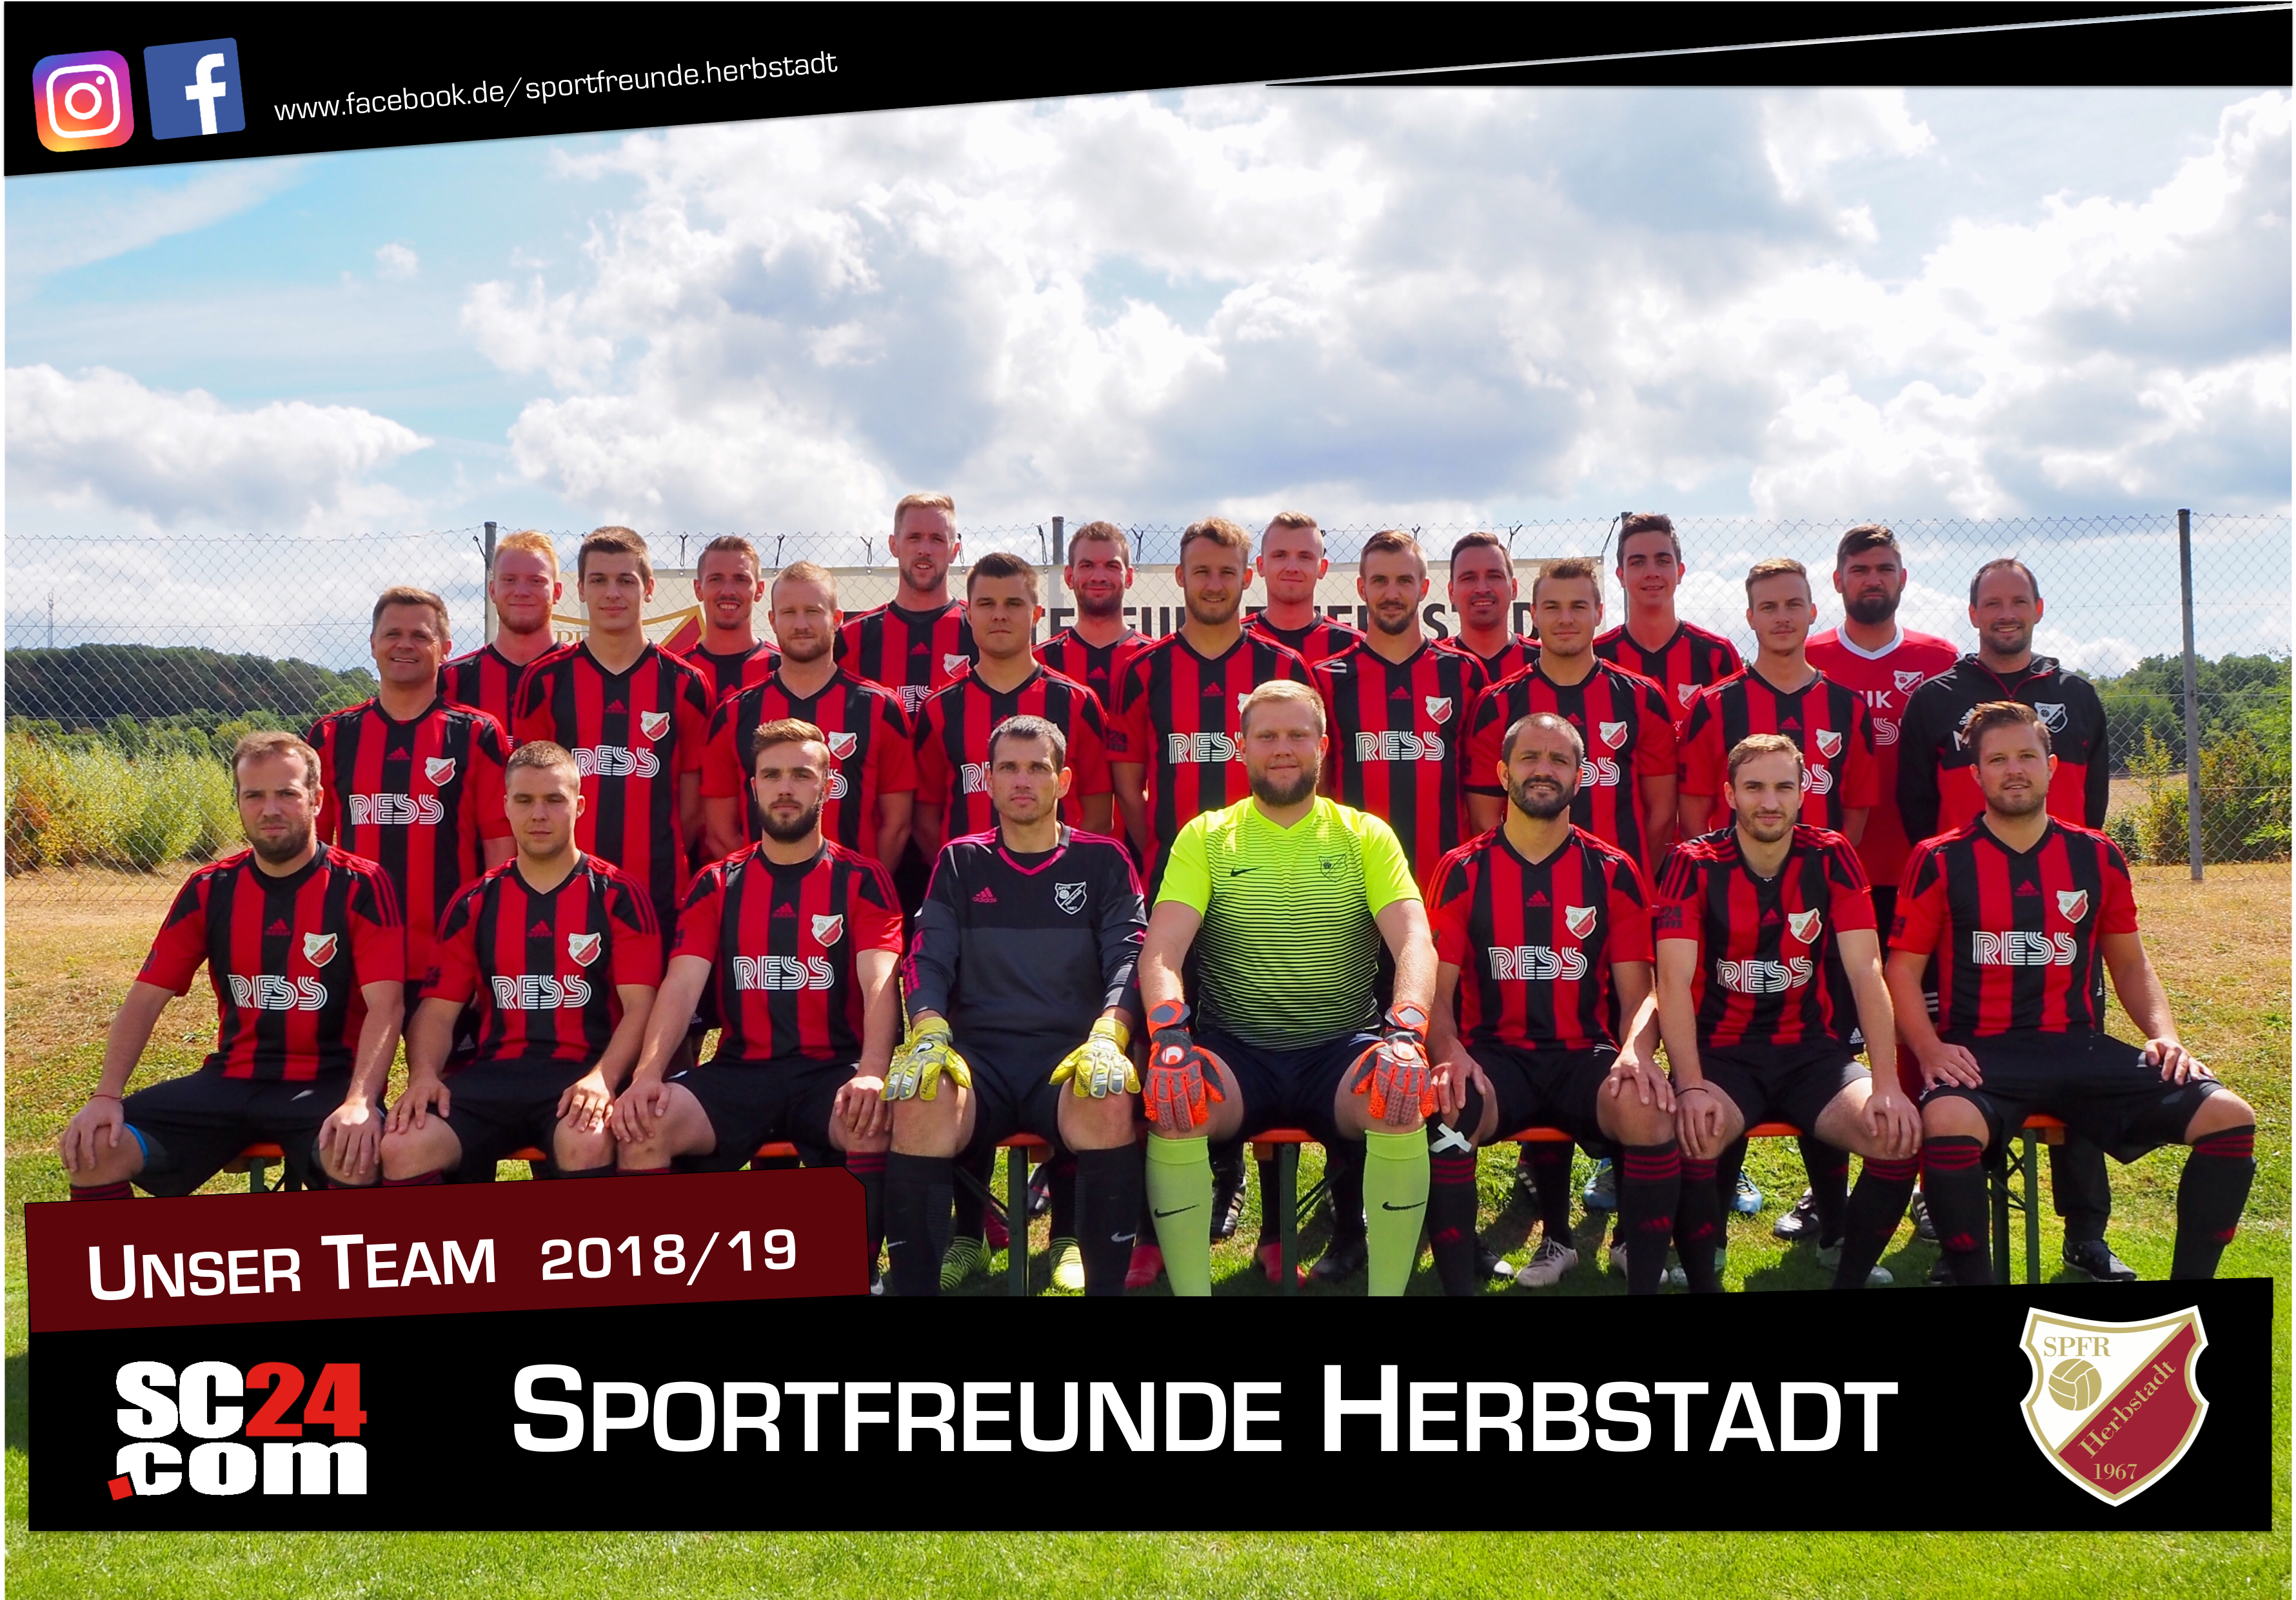 Mannschaftsfoto/Teamfoto von Spfrd Herbstadt